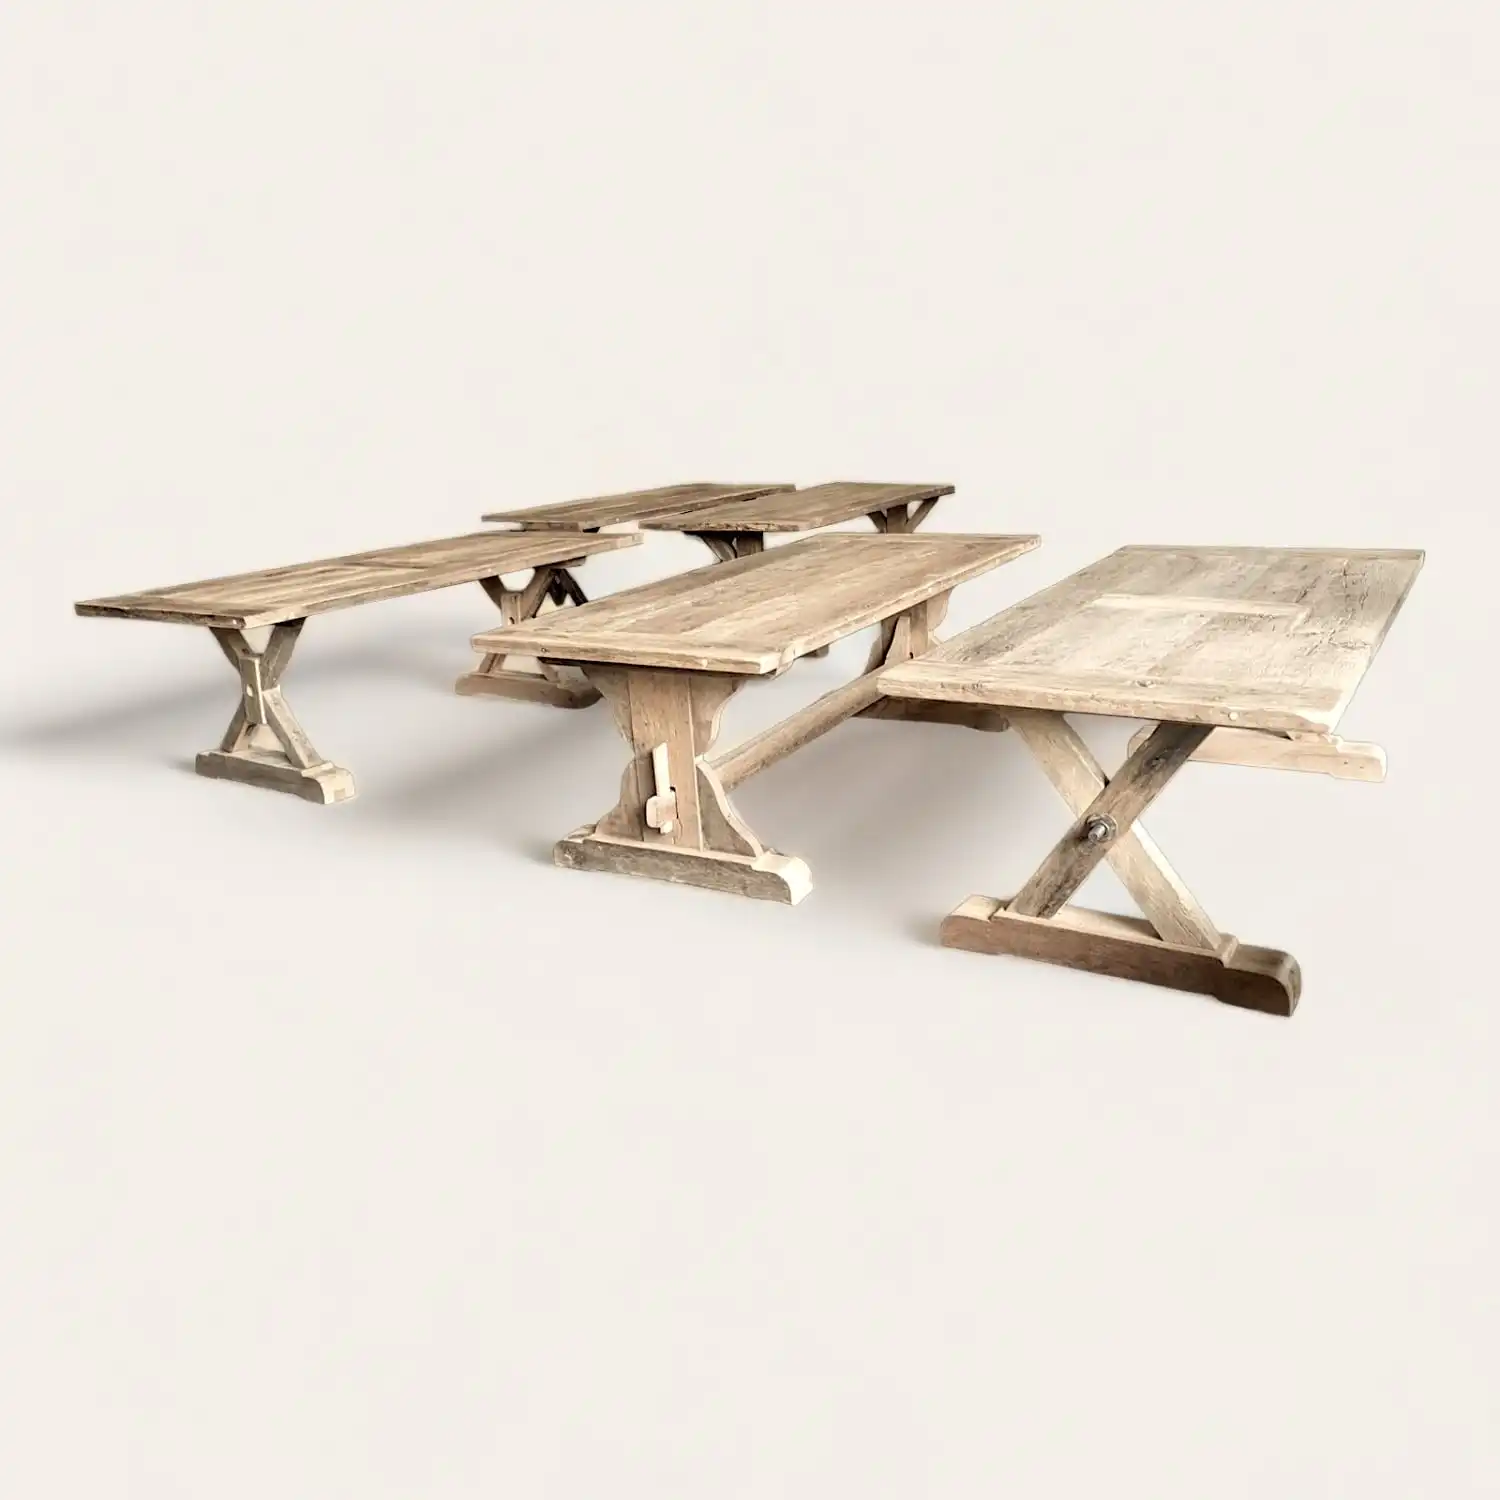  Ensemble de tables de pique-nique rustiques en bois ancien patiné avec bancs intégrés, évoquant un style champêtre et convivial, idéal pour des repas en extérieur ou dans un cadre familial traditionnel. 